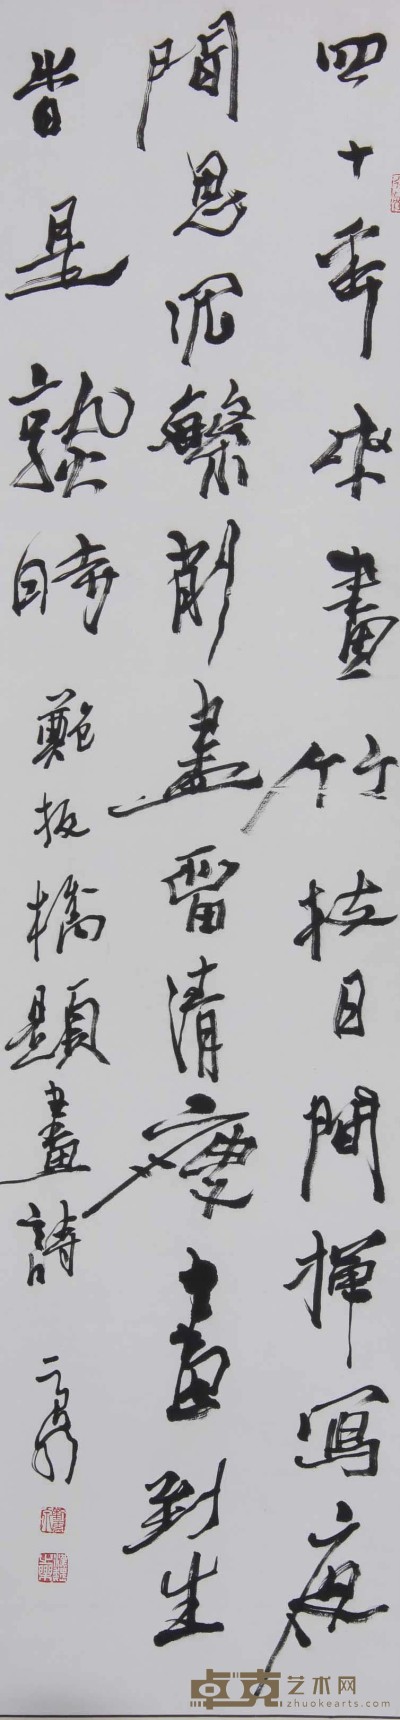 刘云泉《书法》 135×34 cm